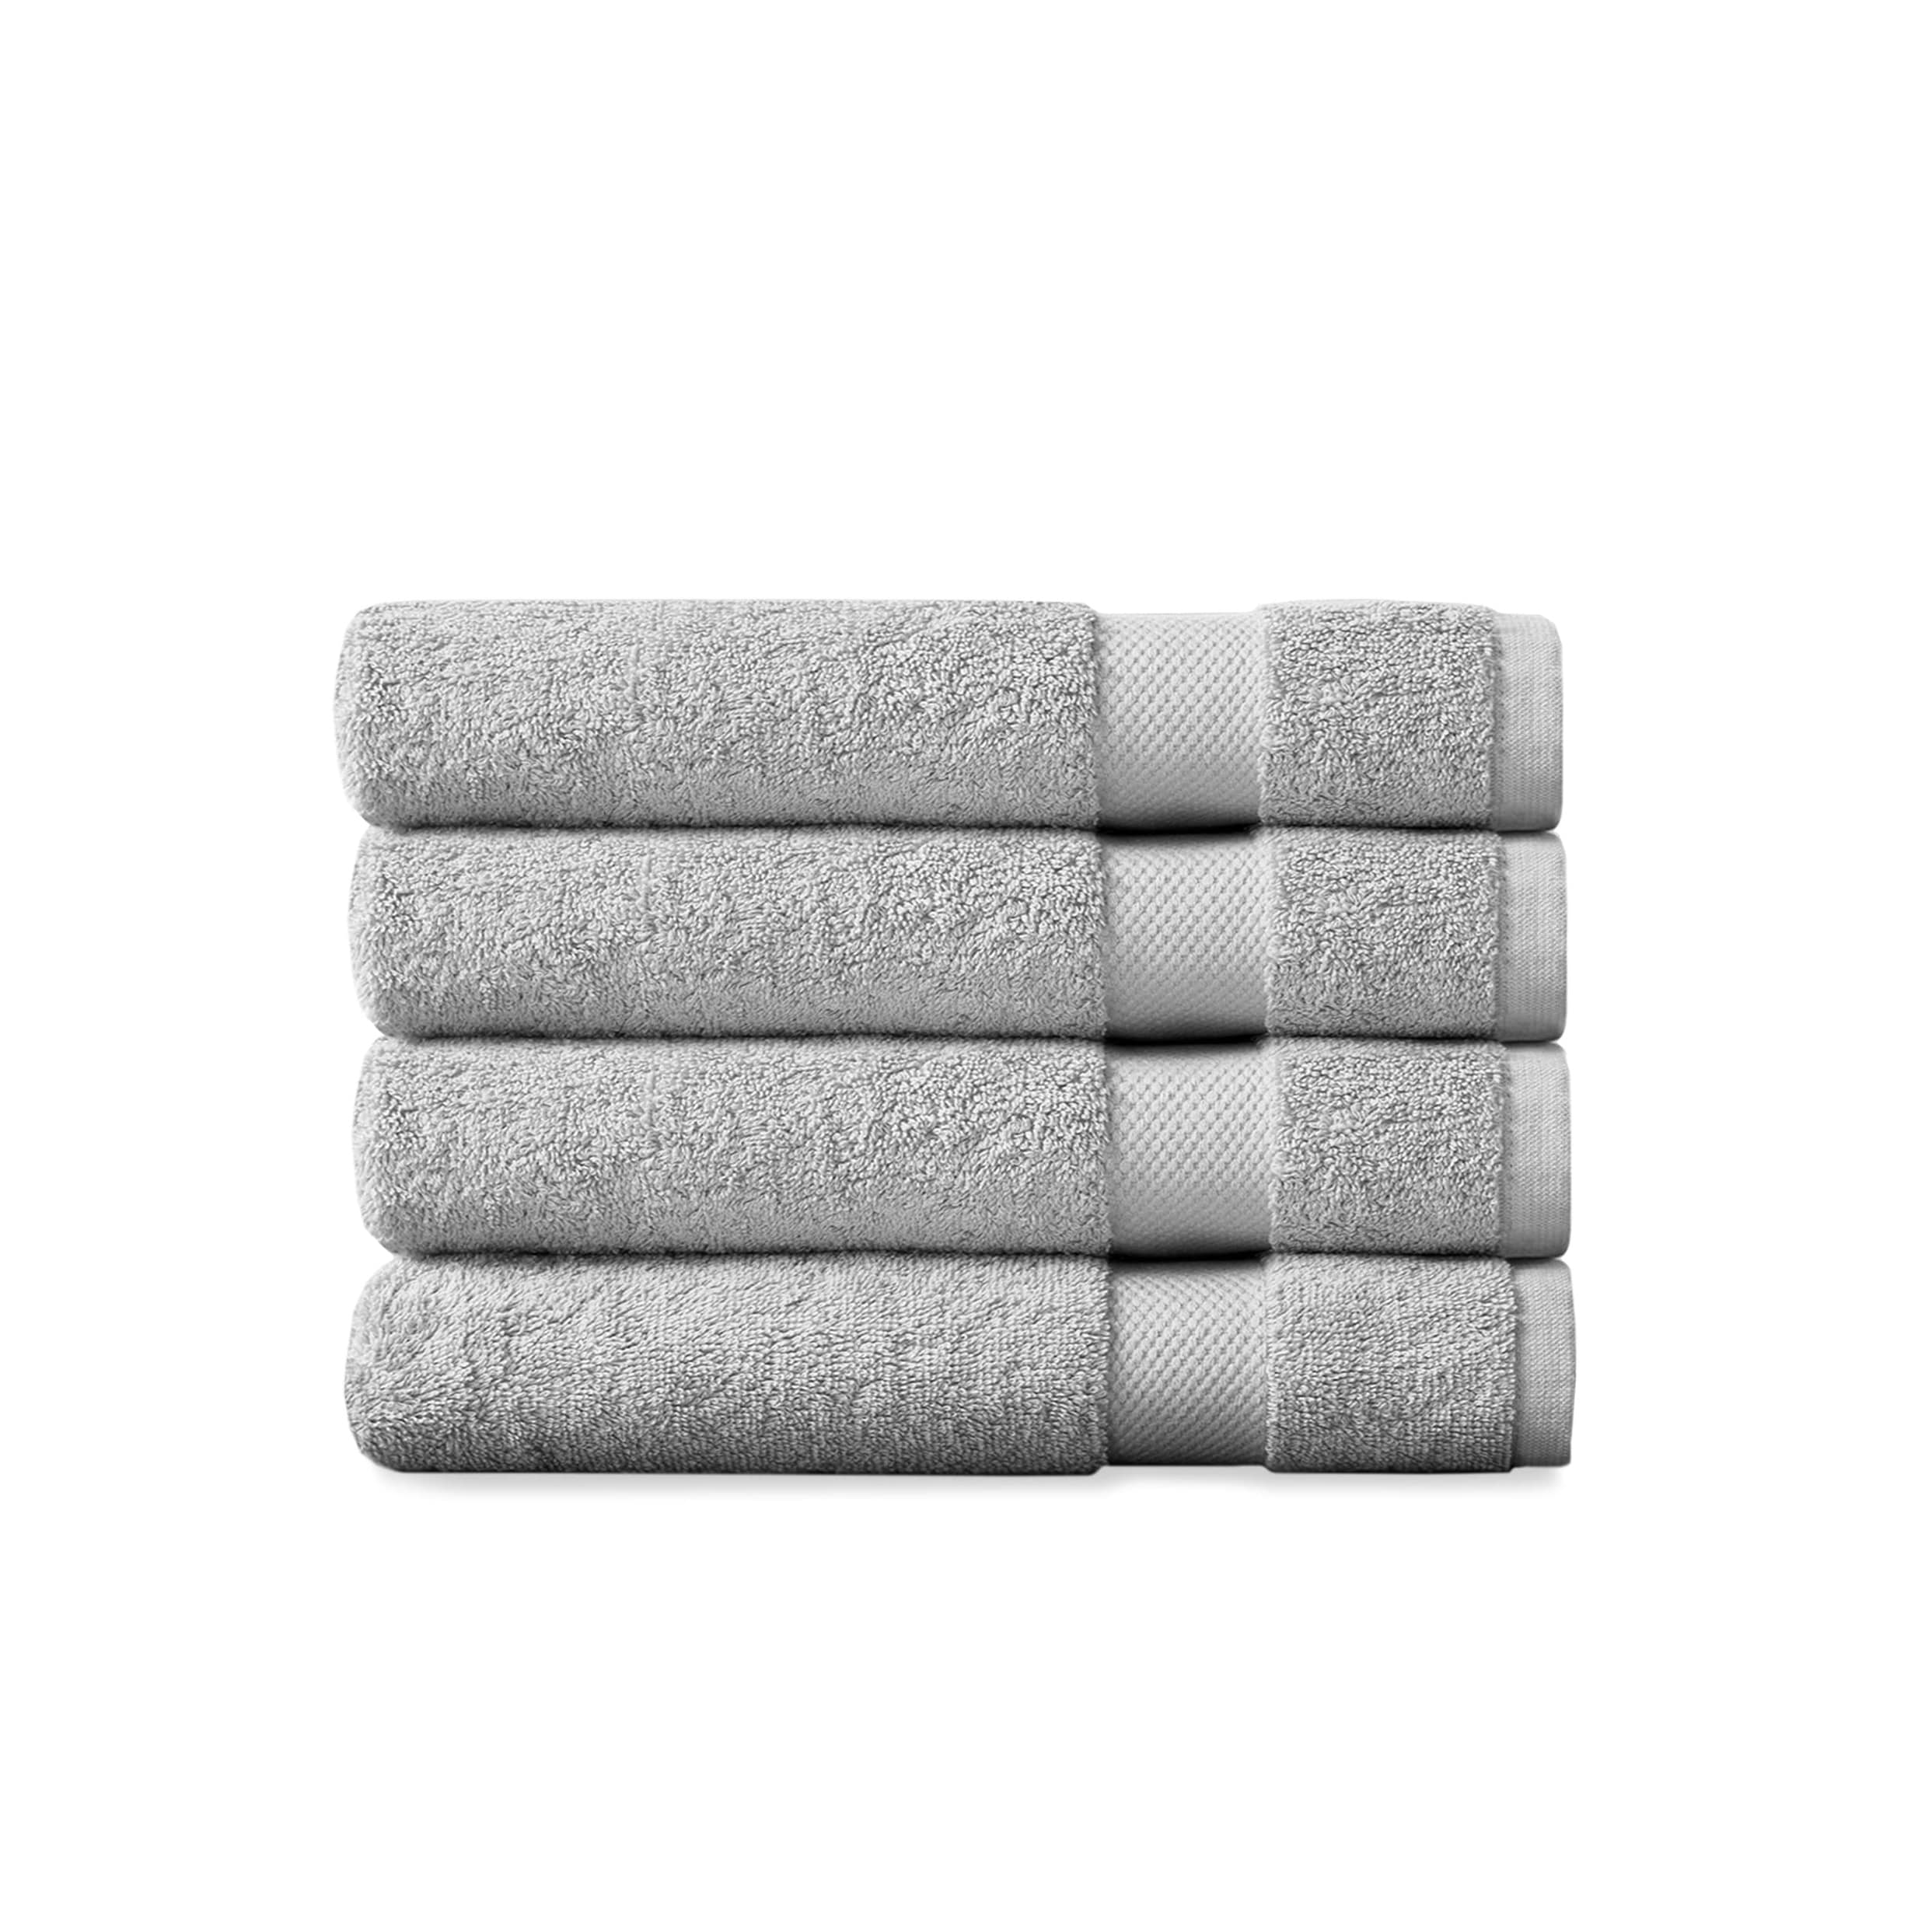 Linen Towels Hand Towel Bath Towel Oeko-tex Certified 